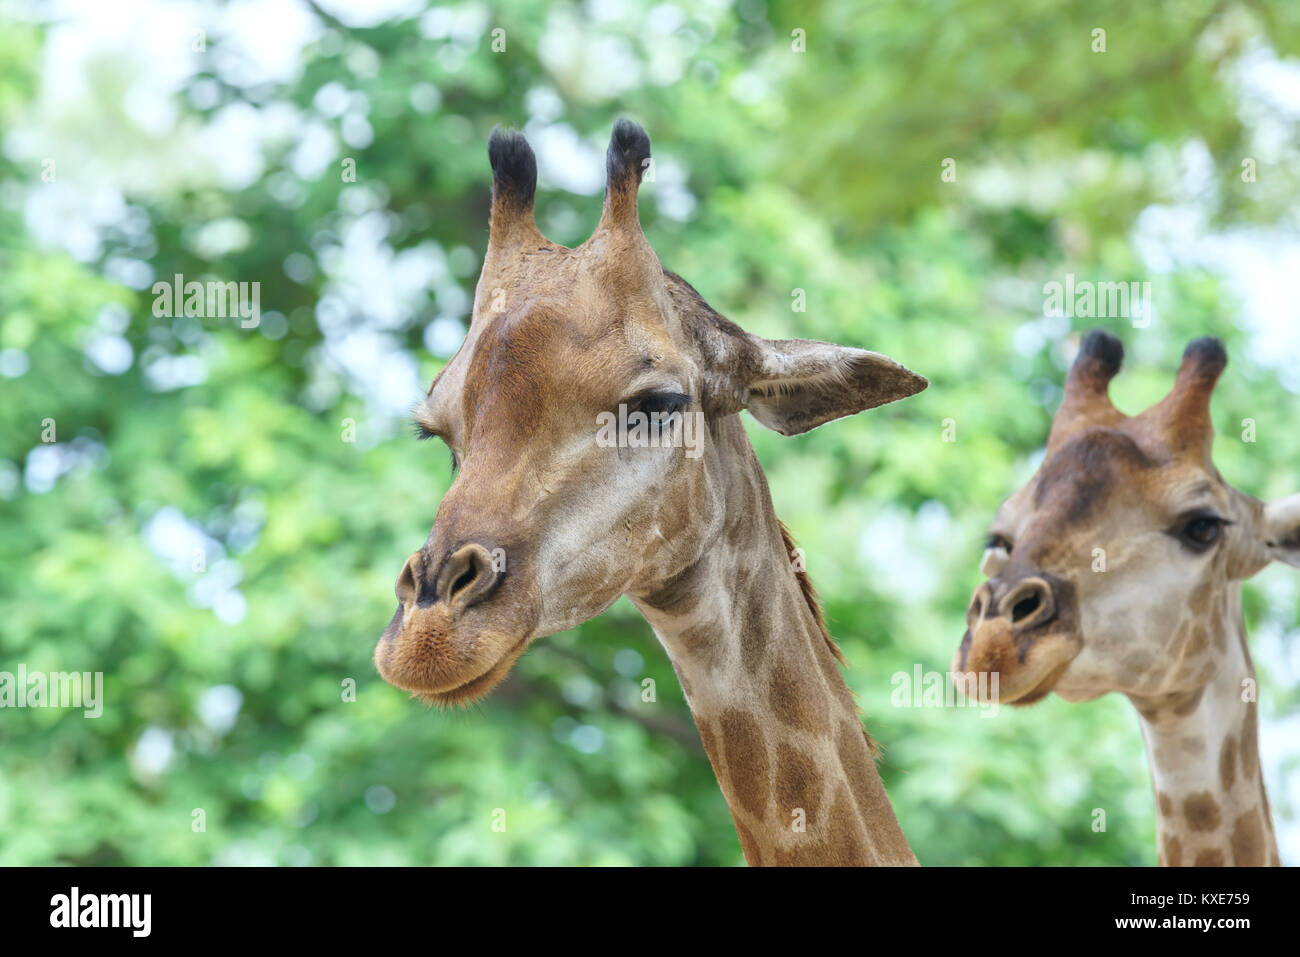 Ritratto di una giraffa con un lungo collo e testa di divertenti aiuta l'animale trovare cibo sui rami alti per aiutarli a sopravvivere nel mondo naturale. Foto Stock